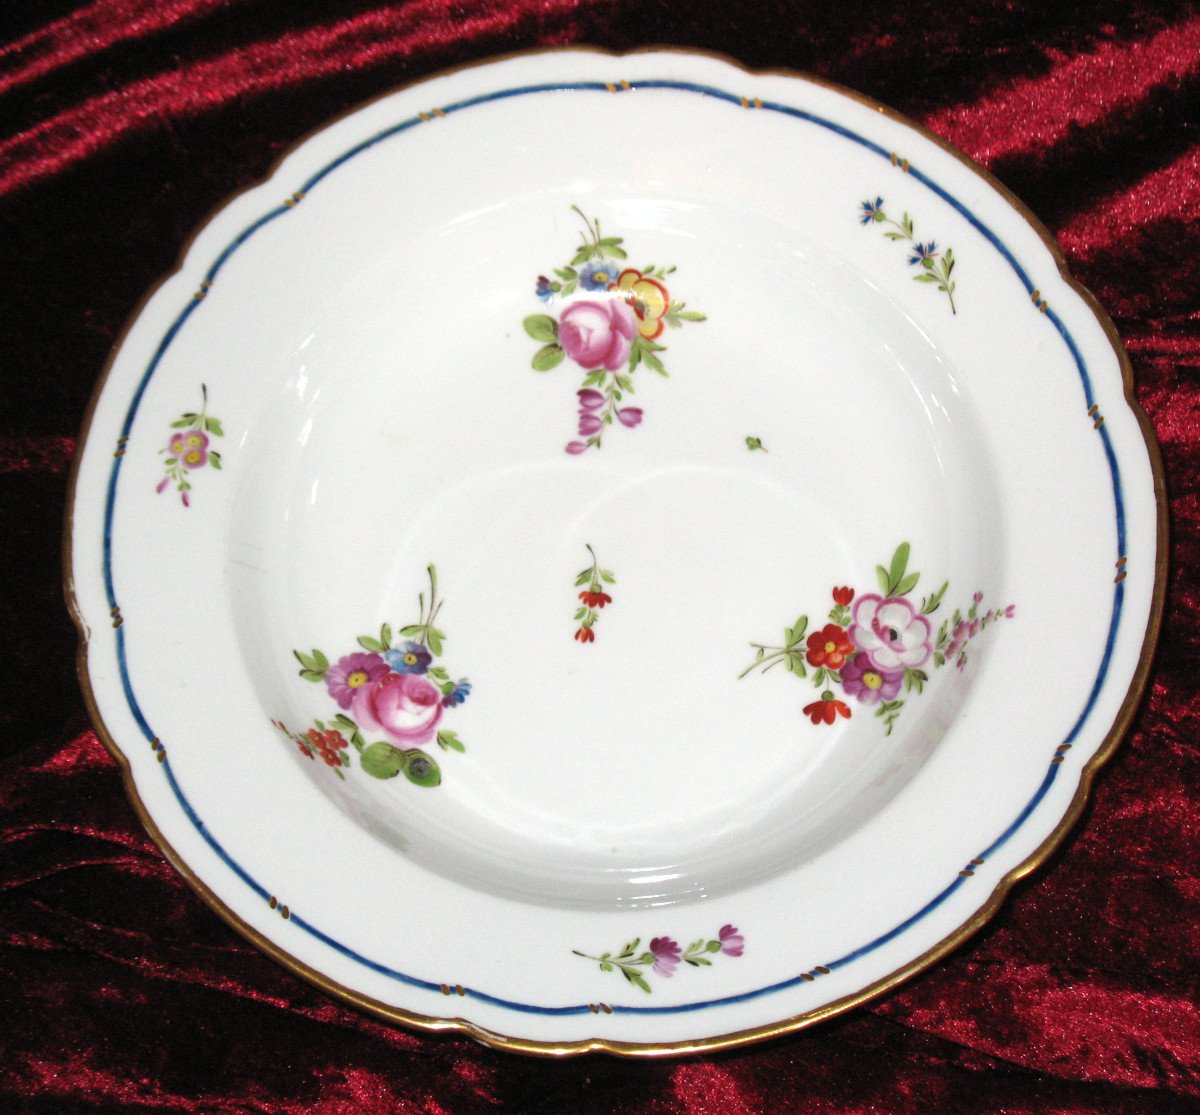 Locré Porcelain Plate With Floral Decoration, 18th Century